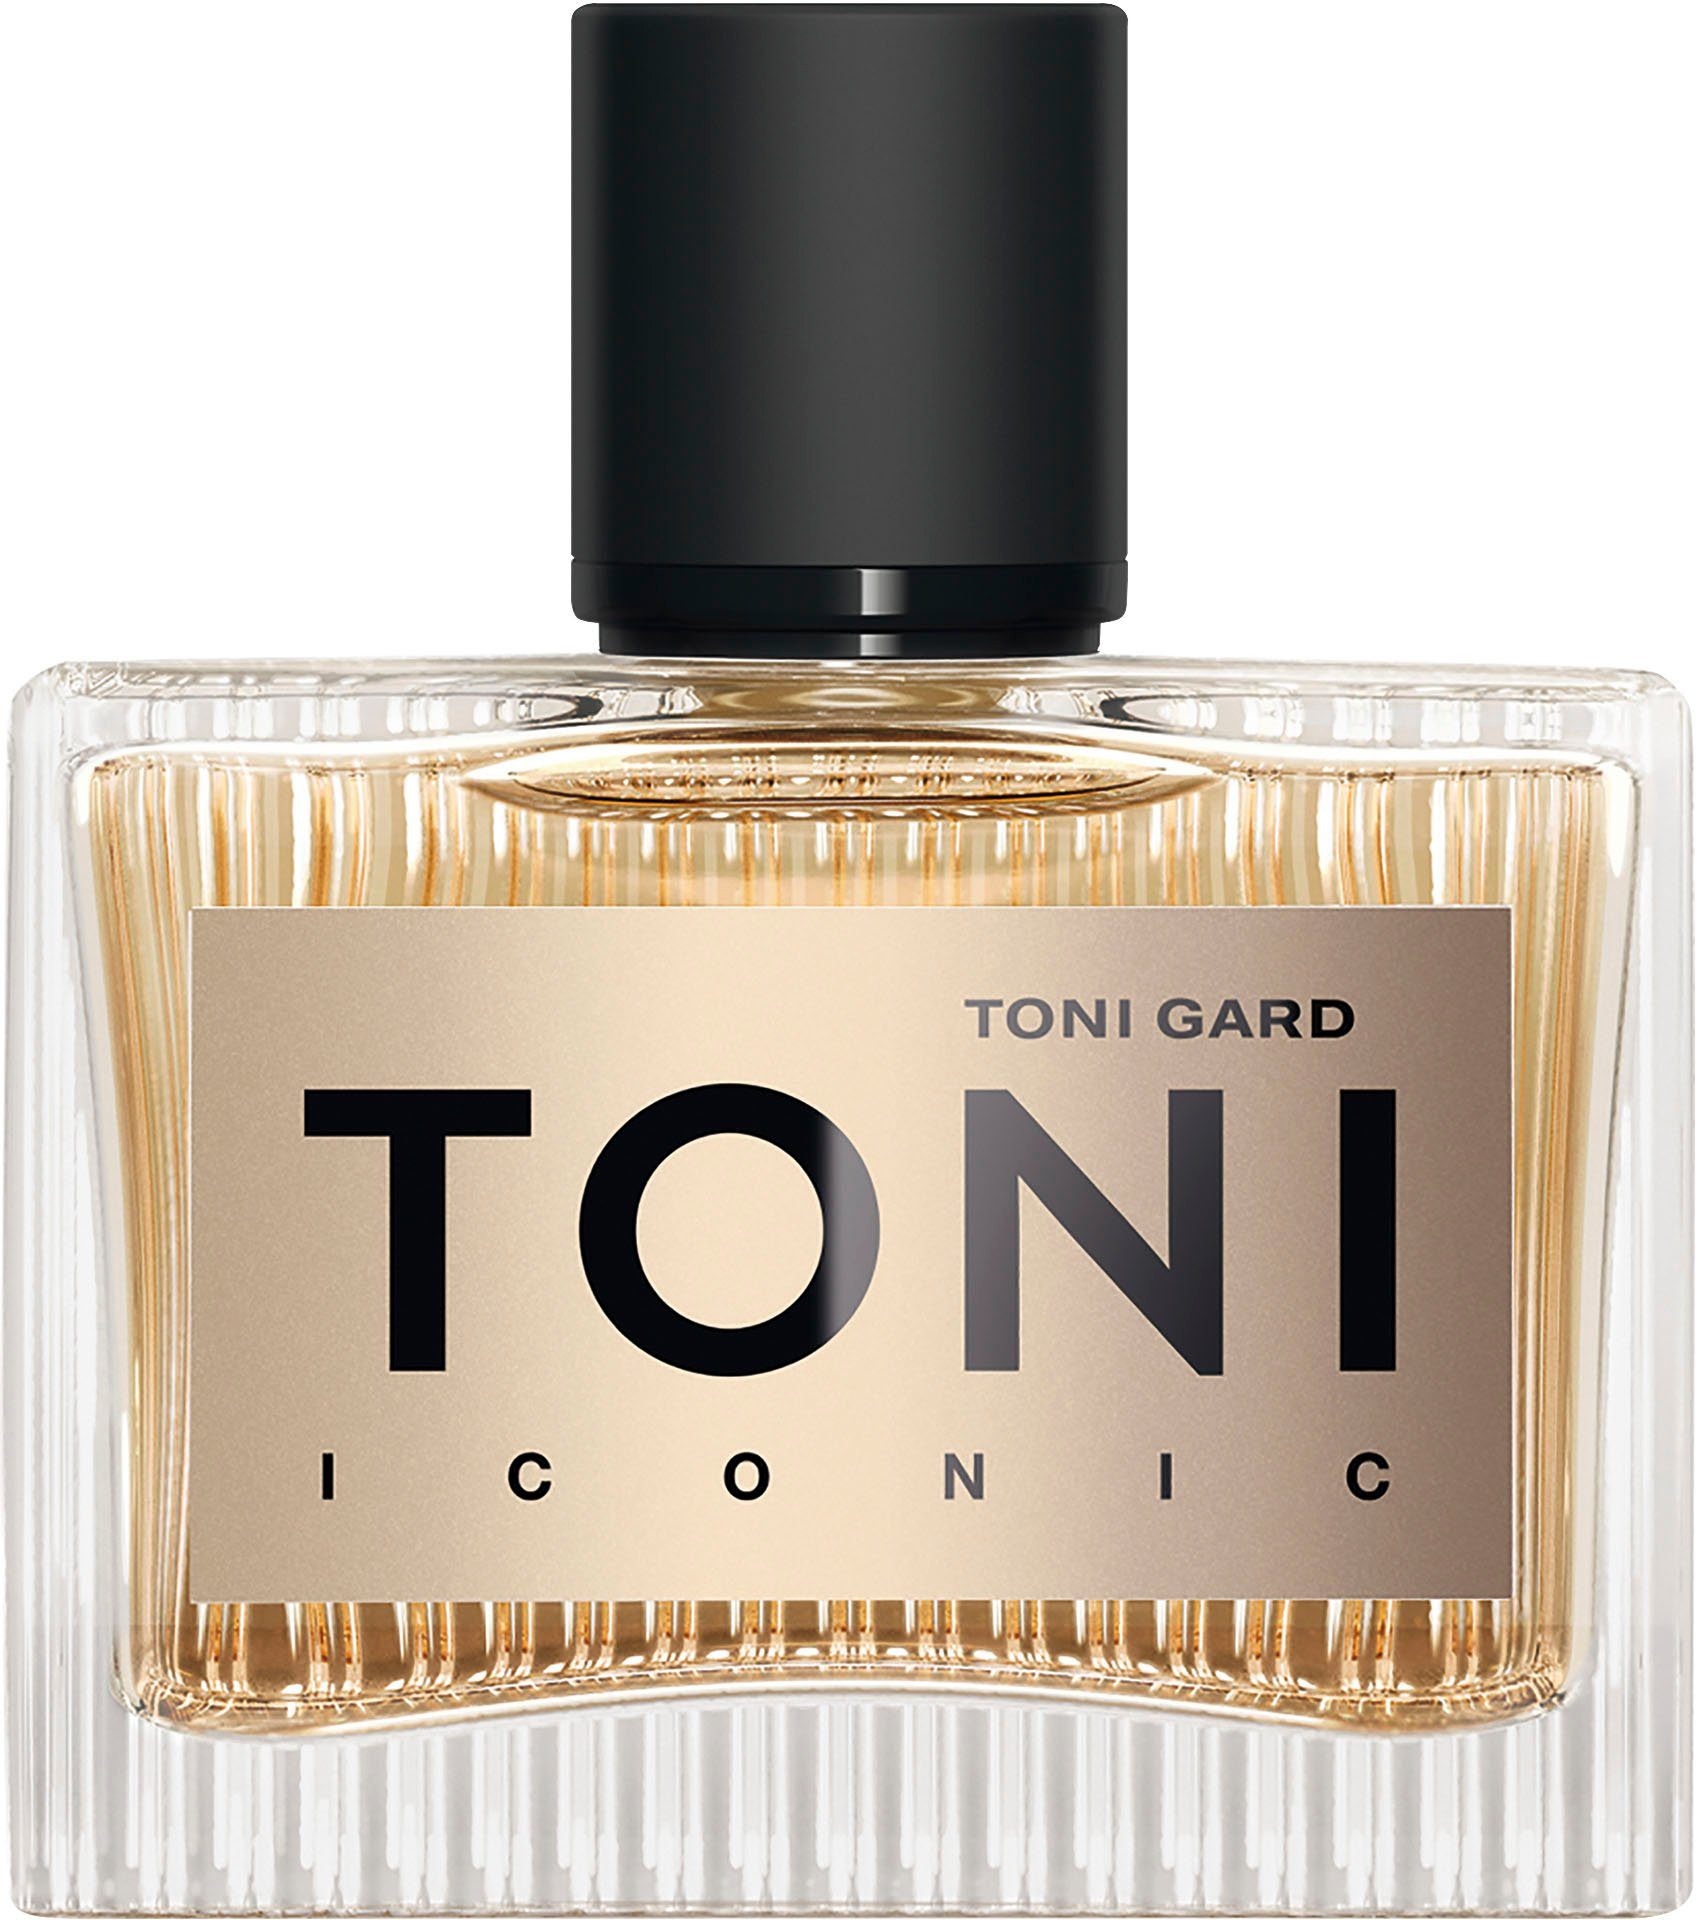 ICONIC Parfum EdP de TONI GARD Eau